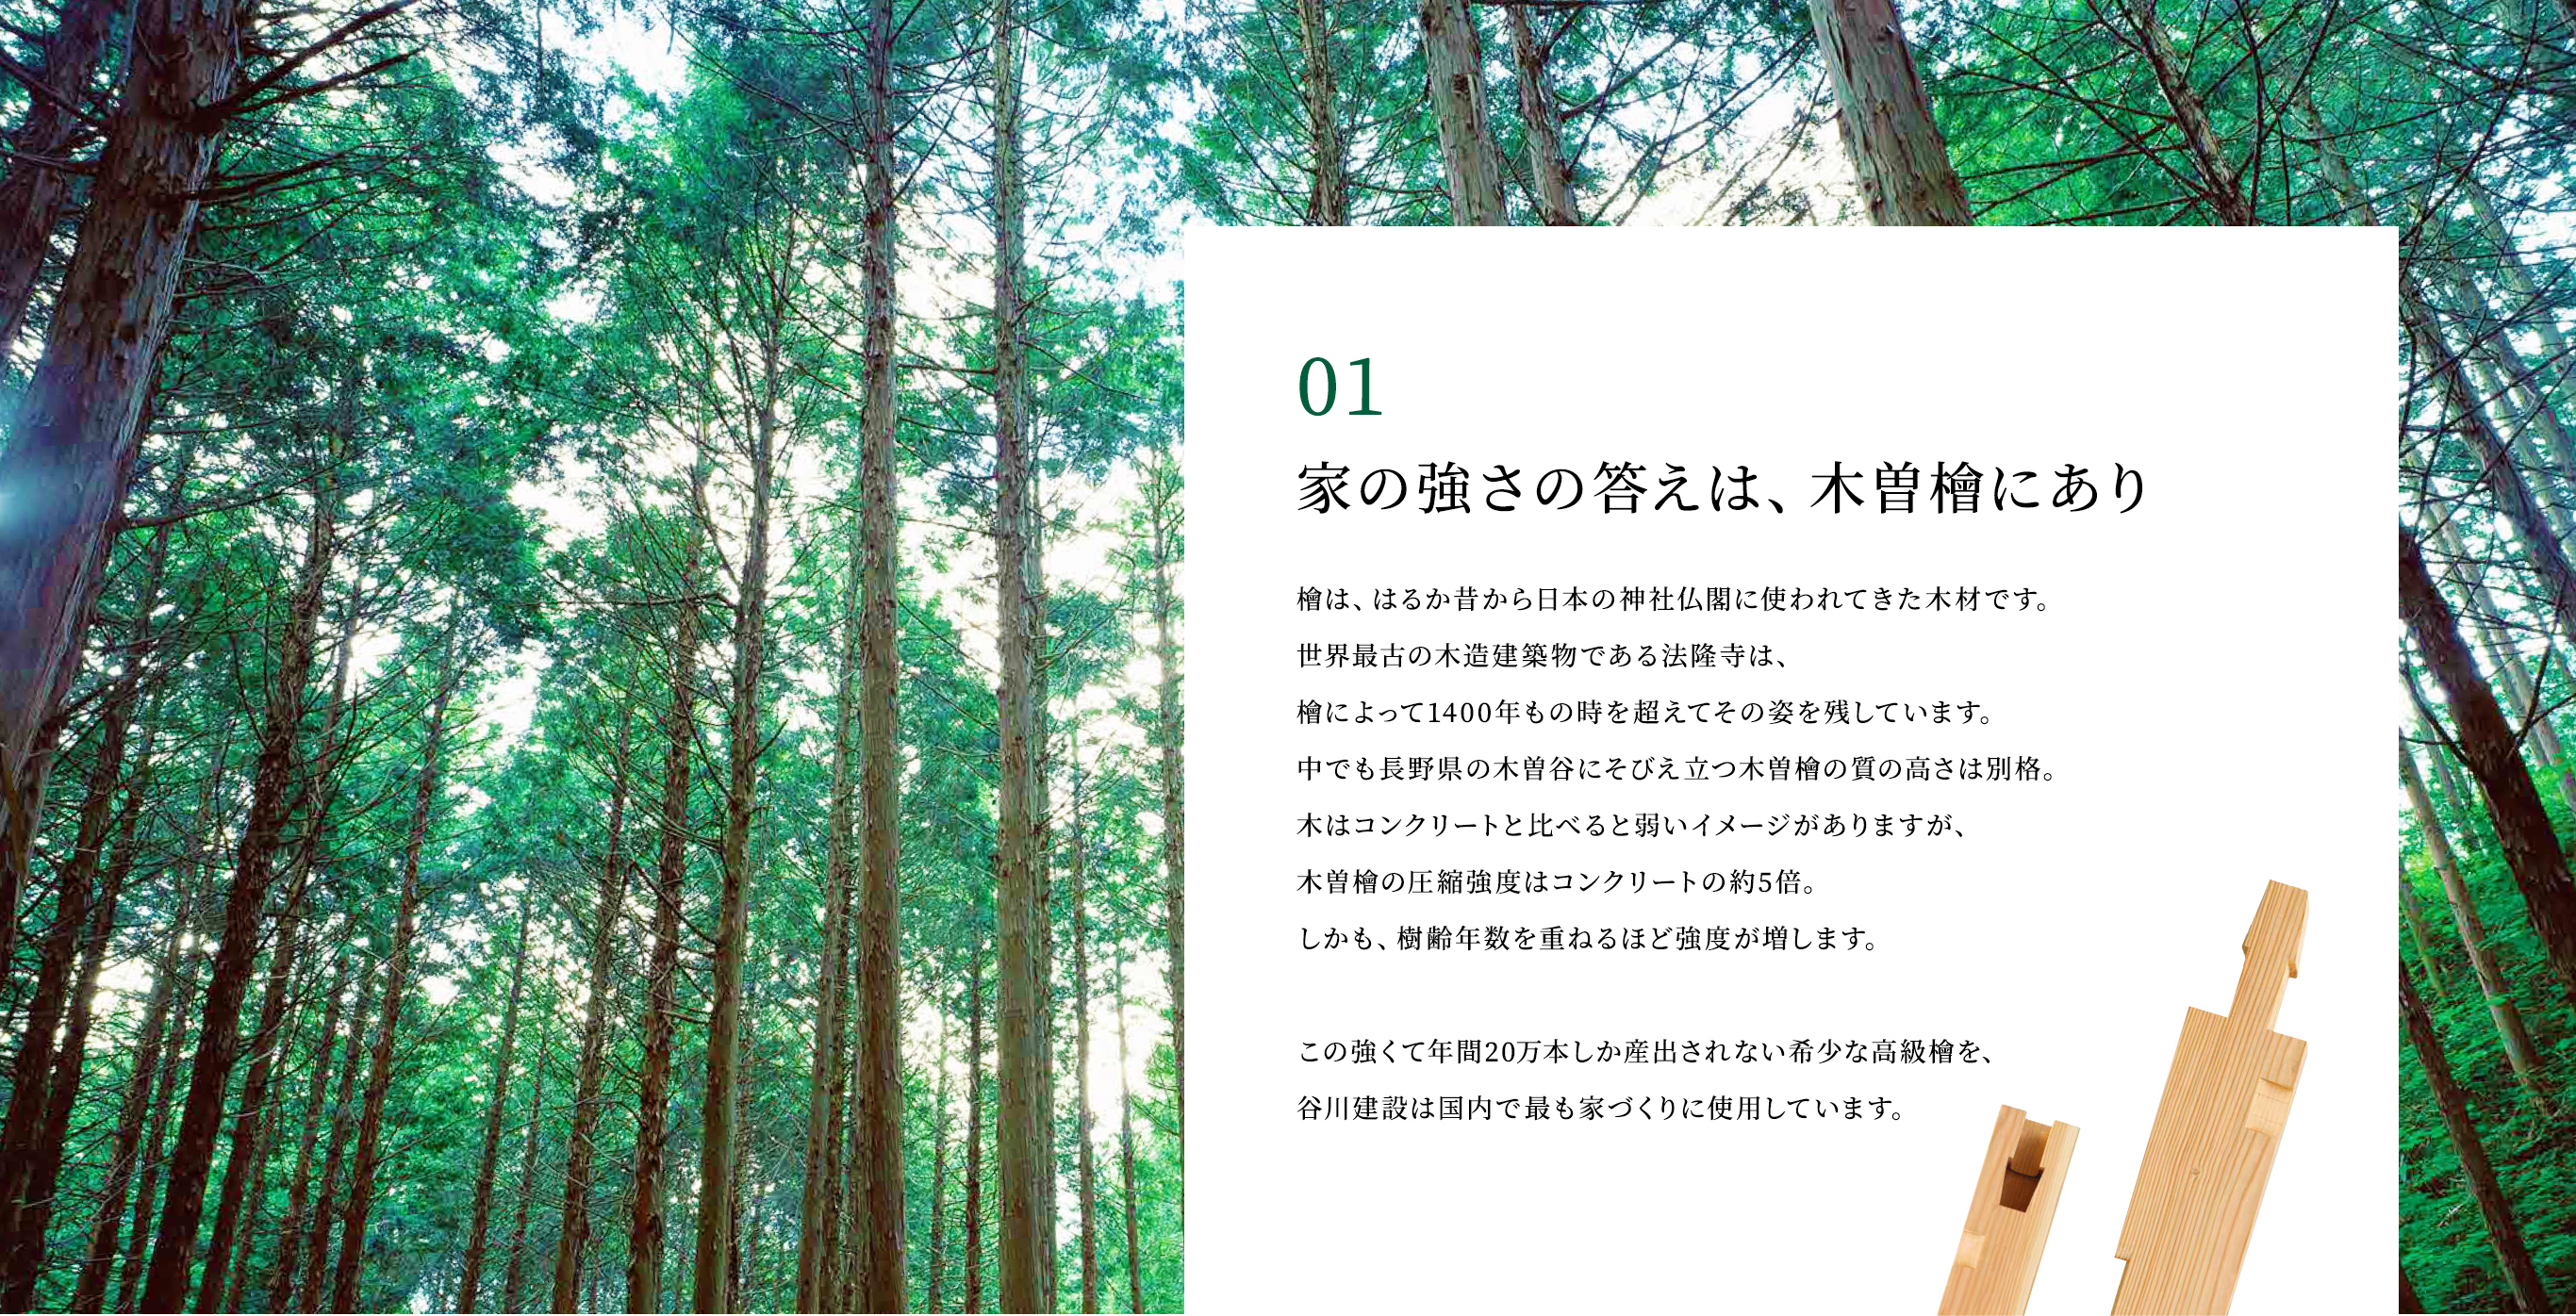 「01.家の強さの答えは、木曽檜にあり」檜は、はるか昔から日本の神社仏閣に使われてきた木材です。世界最古の木造建築物である法隆寺は、檜によって1400年もの時を超えてその姿を残しています。中でも長野県の木曽谷にそびえ立つ木曽檜の質の高さは別格。木はコンクリートと比べると弱いイメージがありますが、木曽檜の圧縮強度はコンクリートの約5倍。しかも、樹齢年数を重ねるほど強度が増します。この強くて年間20万本しか産出されない希少な高級檜を、谷川建設は国内で最も家づくりに使用しています。